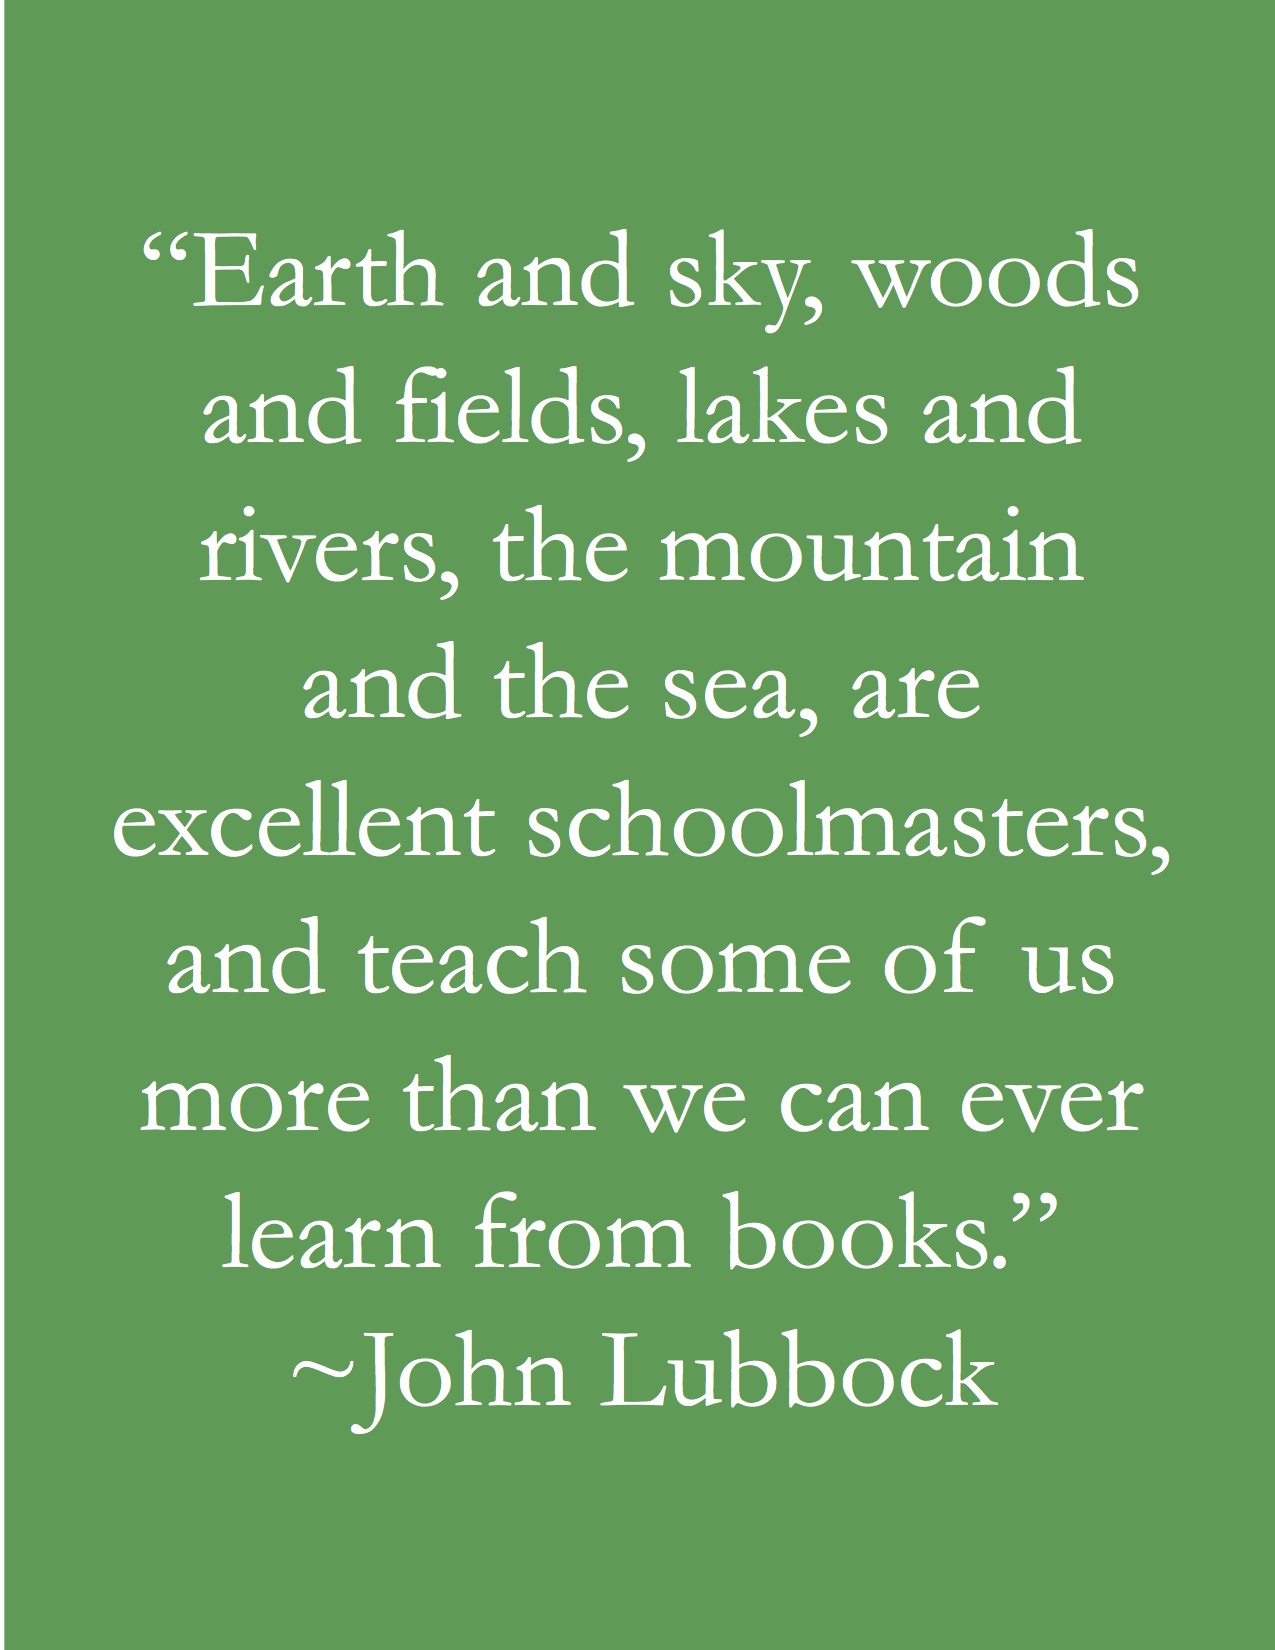 John Lubbock's quote #6